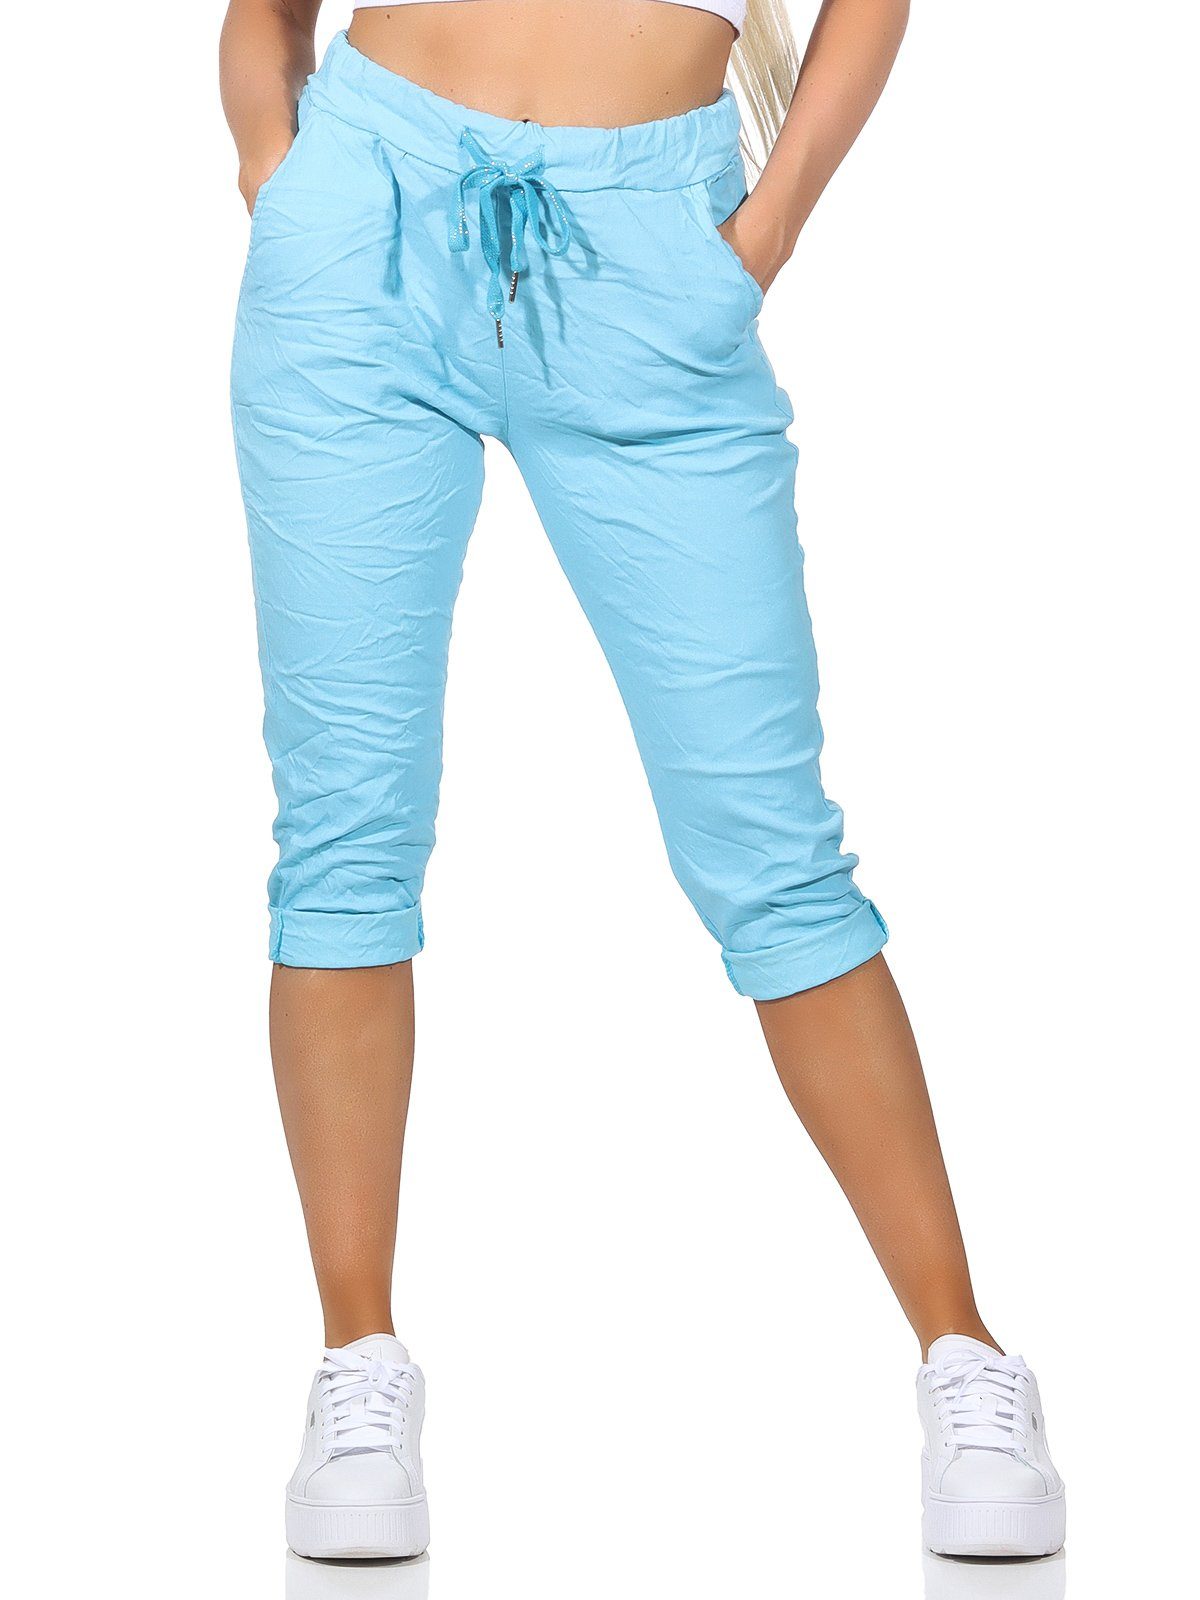 Aurela Damenmode Kordelzug, Capri 36-44 sommerlichen Sommerhose Jeans Taschen und Farben, in Damen Bermuda Hose 7/8-Hose Türkis Kurze